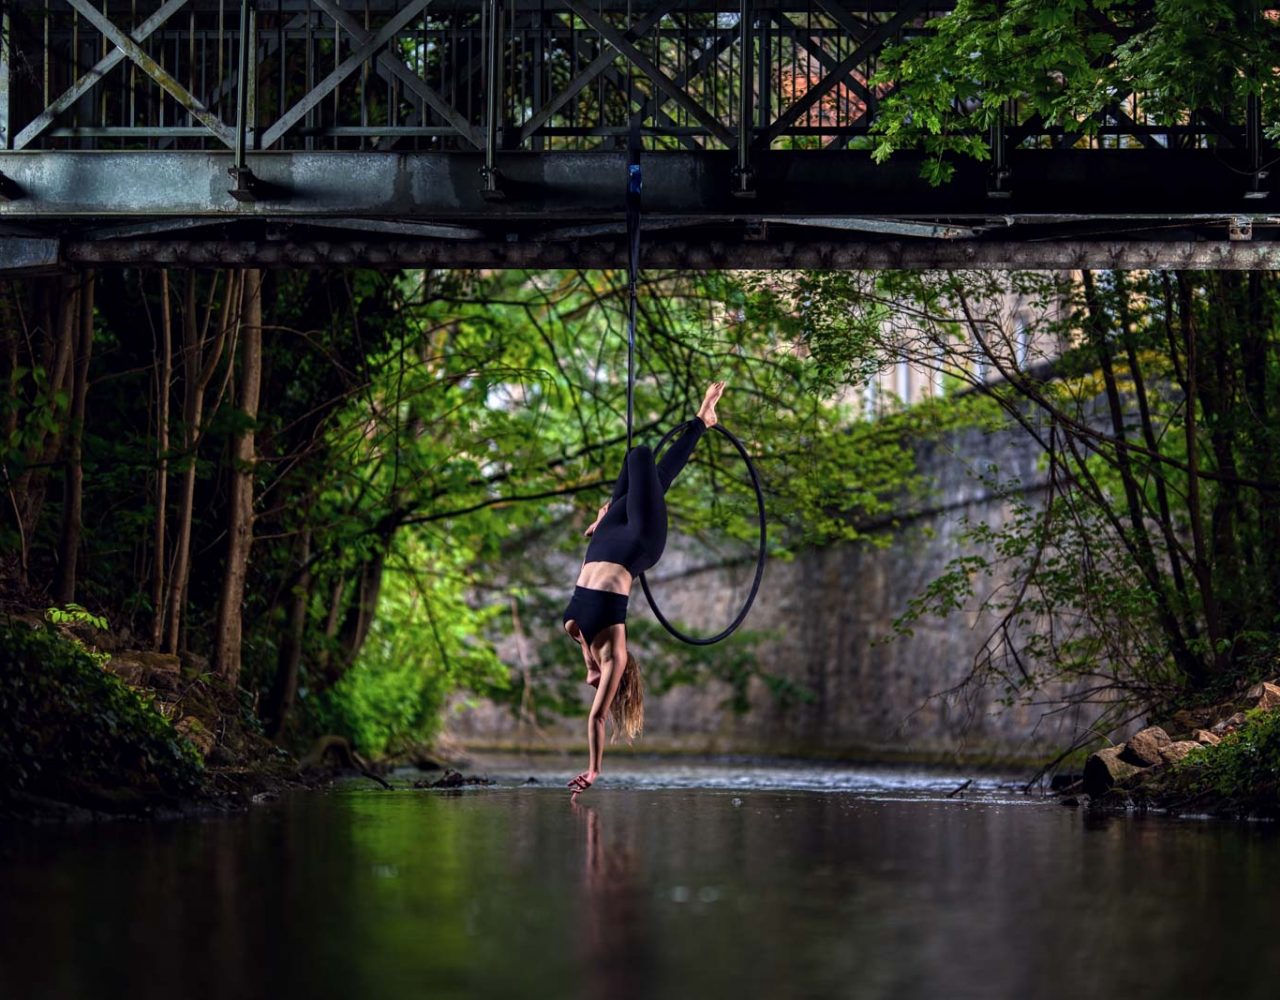 Aerial-Hoop Fotografie an einer Brücke über einem Fluss. Turnerin in akrobatischer Pose wird fotografiert.